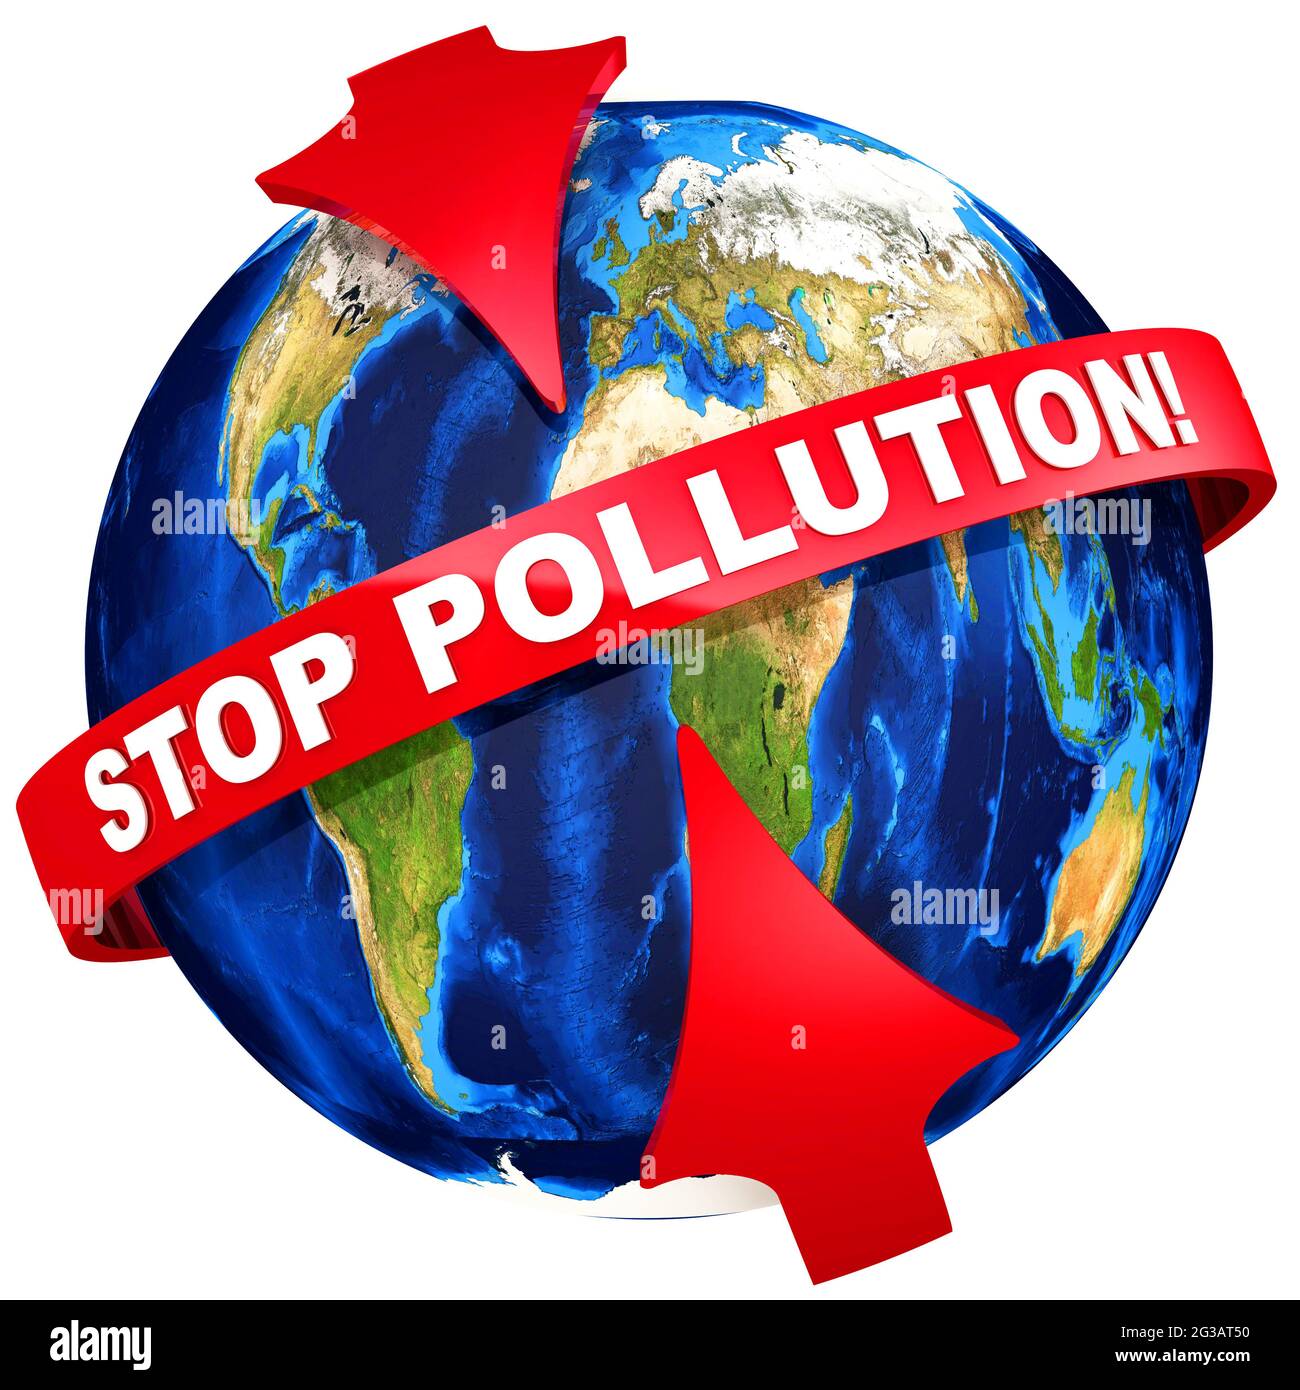 Arrêtez la pollution de la Terre! Les flèches rouges pointent vers le texte blanc STOP POLLUTION! Sur la bande rouge sur l'arrière-plan du Globe. Isolé Banque D'Images